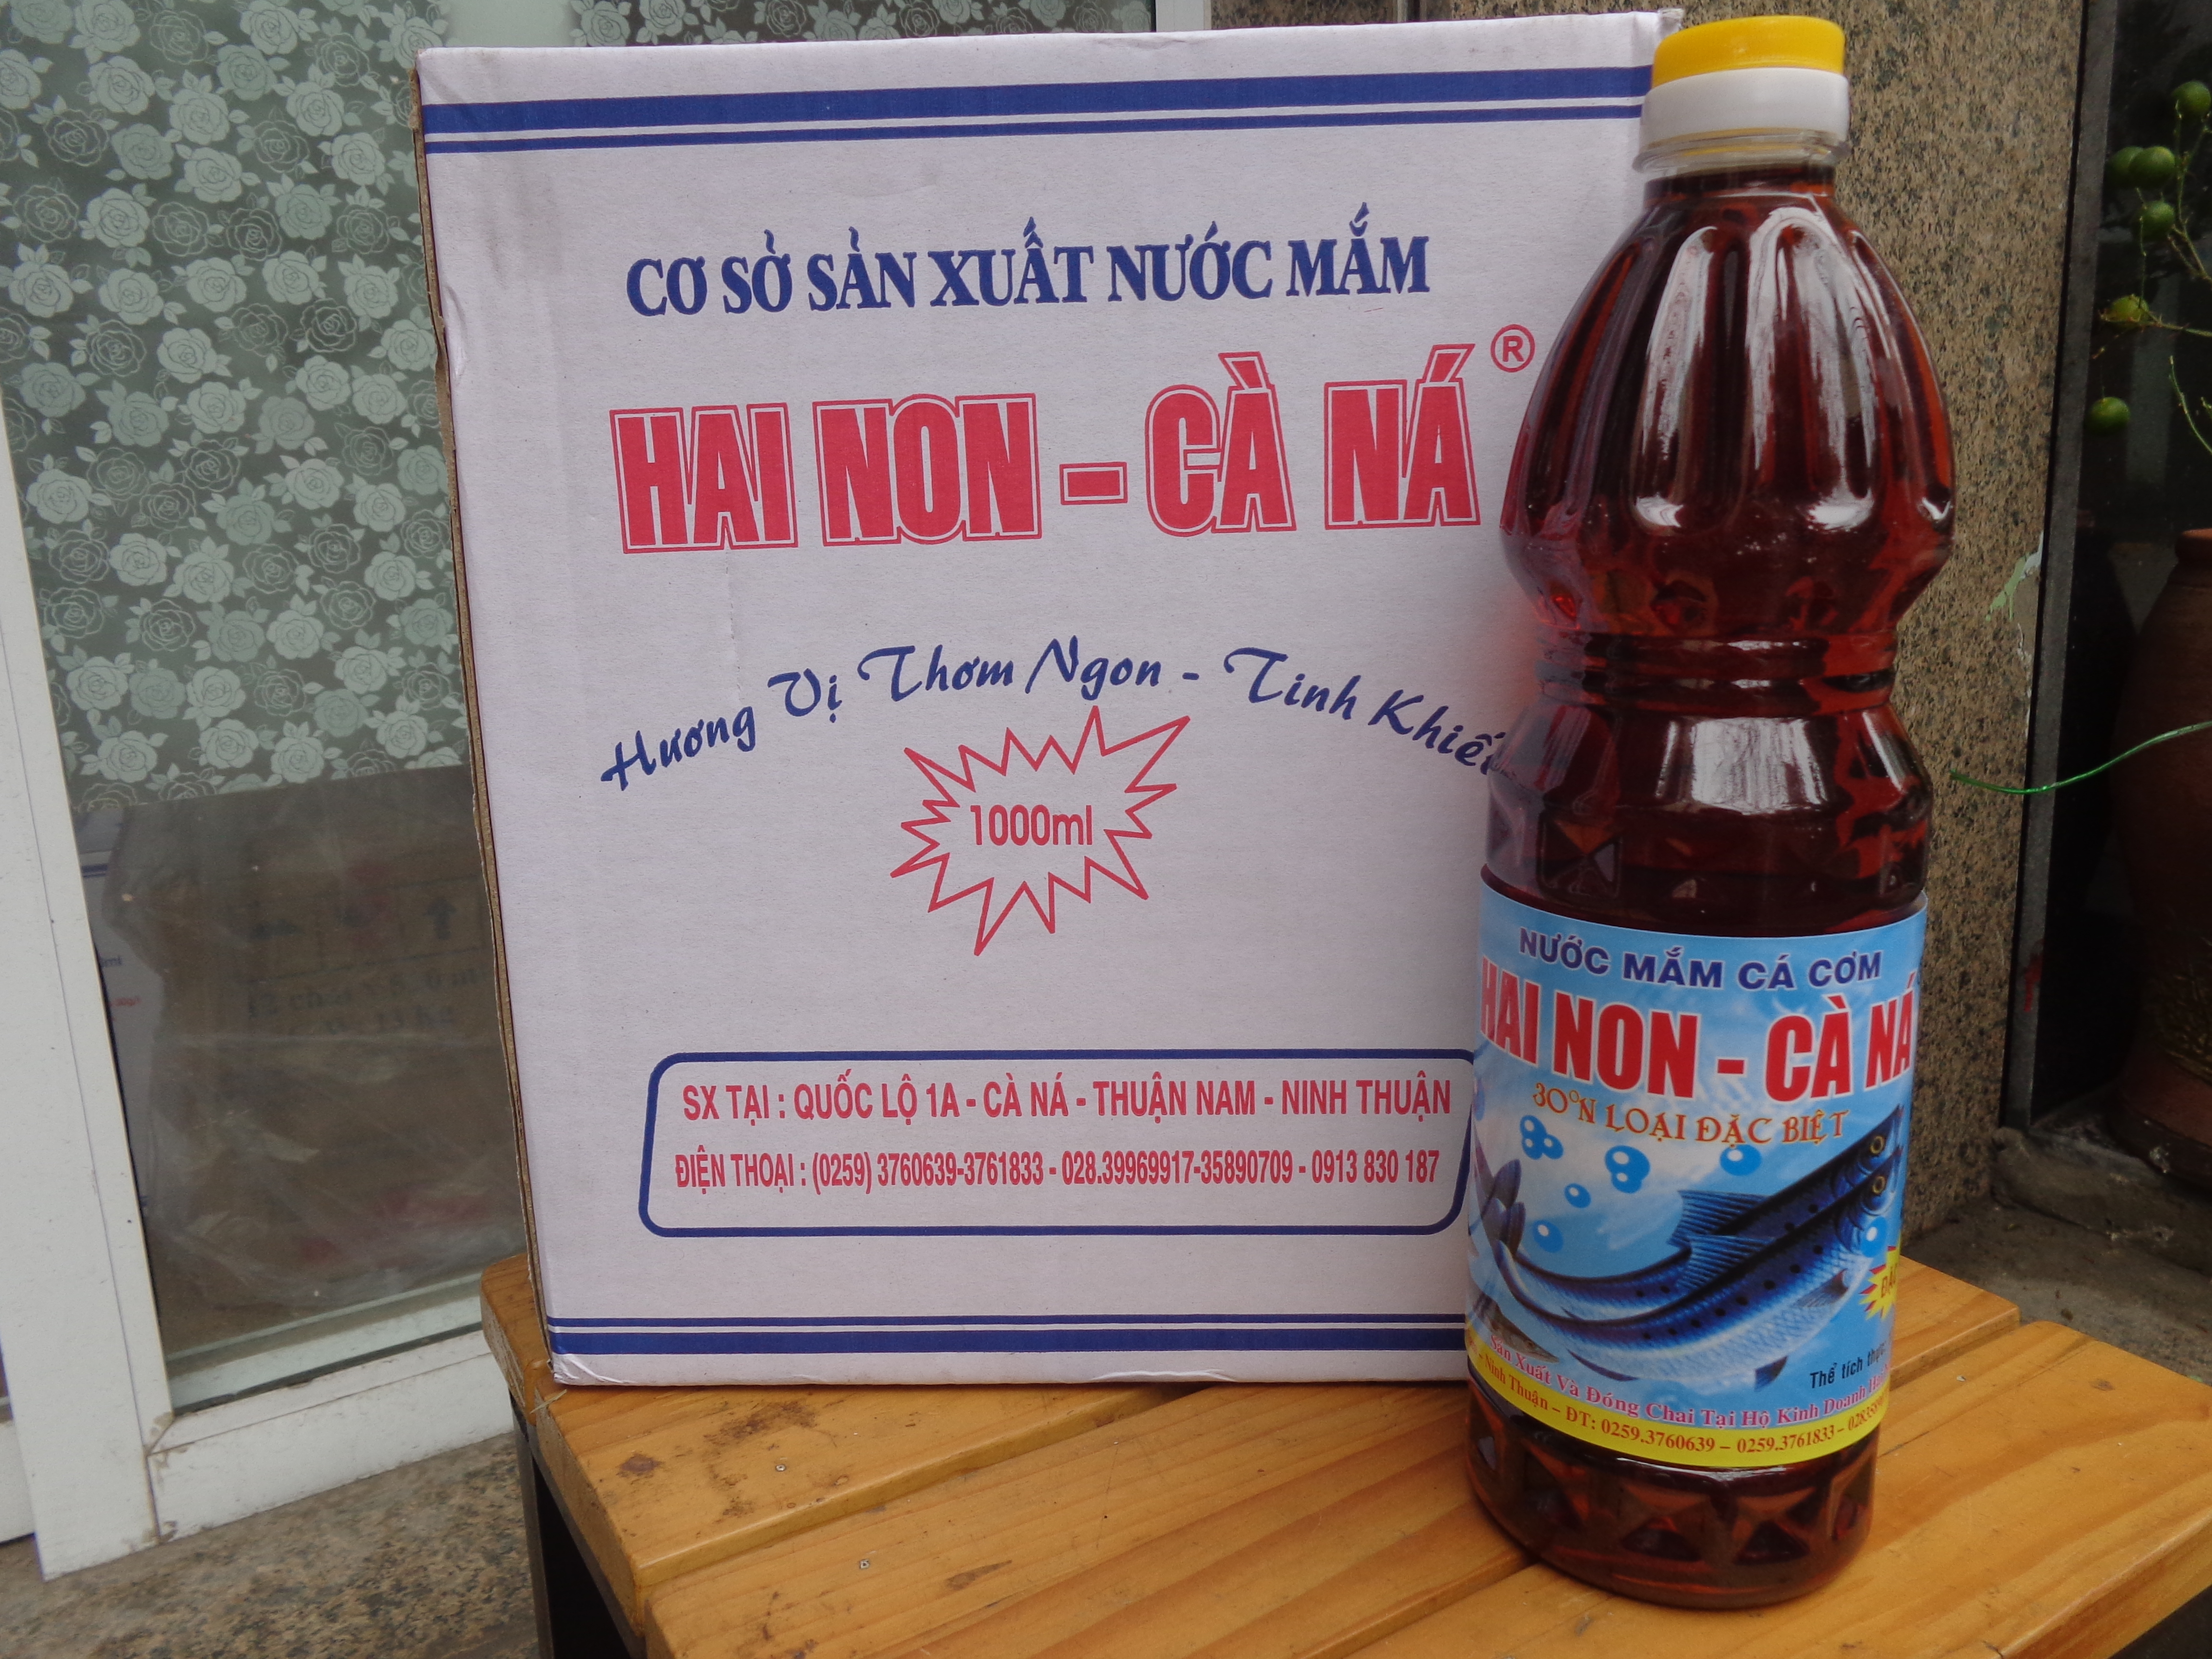 Nước mắm Cà Ná loại nào ngon và nên mua ở đâu tại Hà Nội?